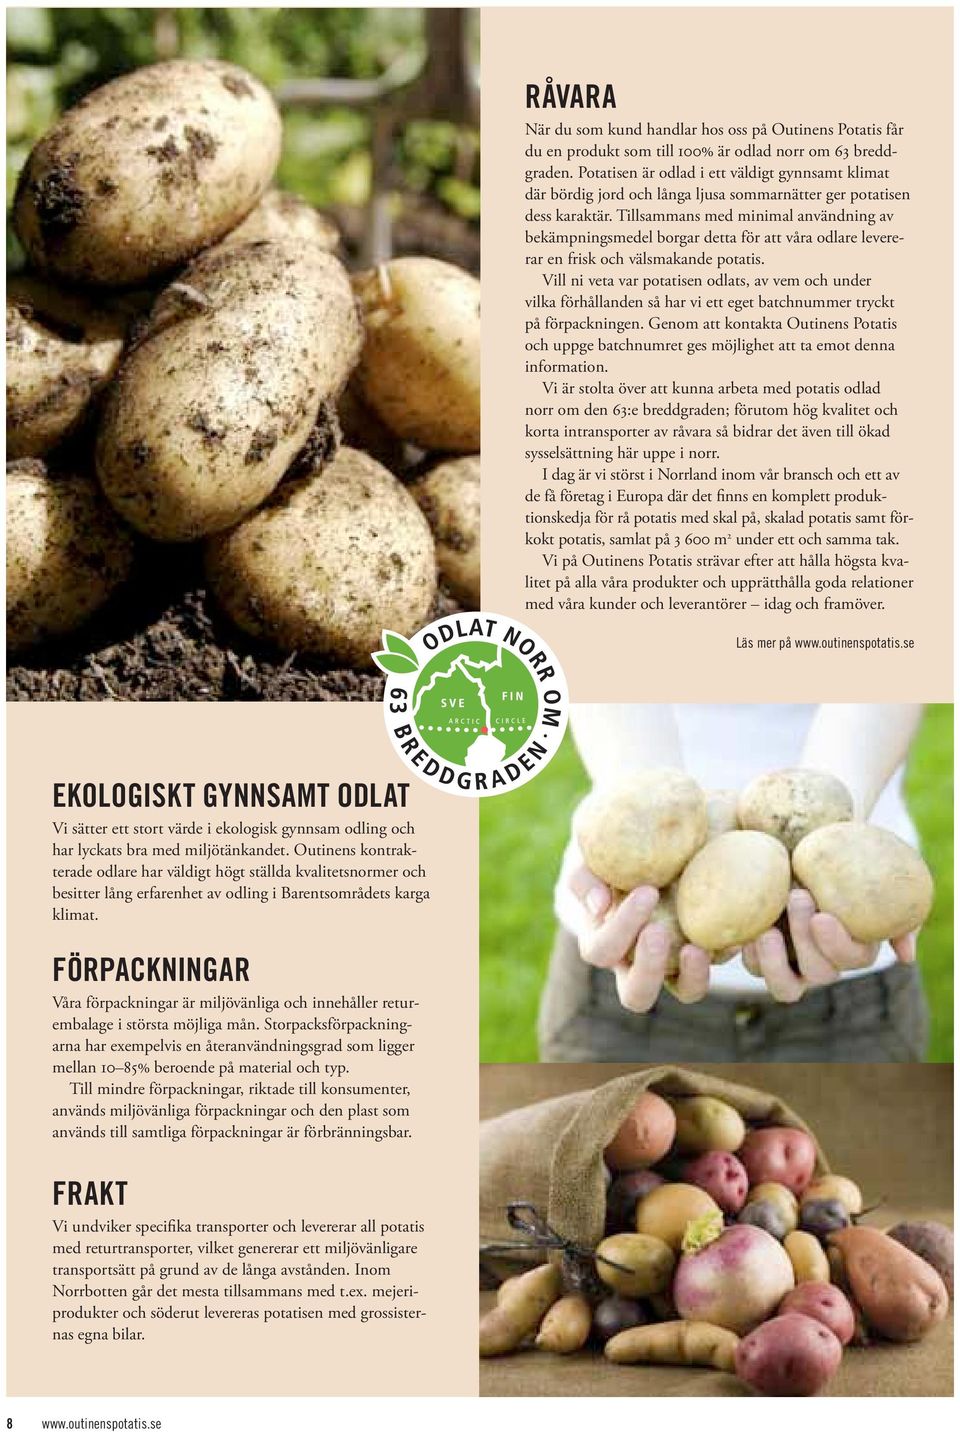 Tillsammans med minimal användning av bekämpningsmedel borgar detta för att våra odlare levererar en frisk och välsmakande potatis.